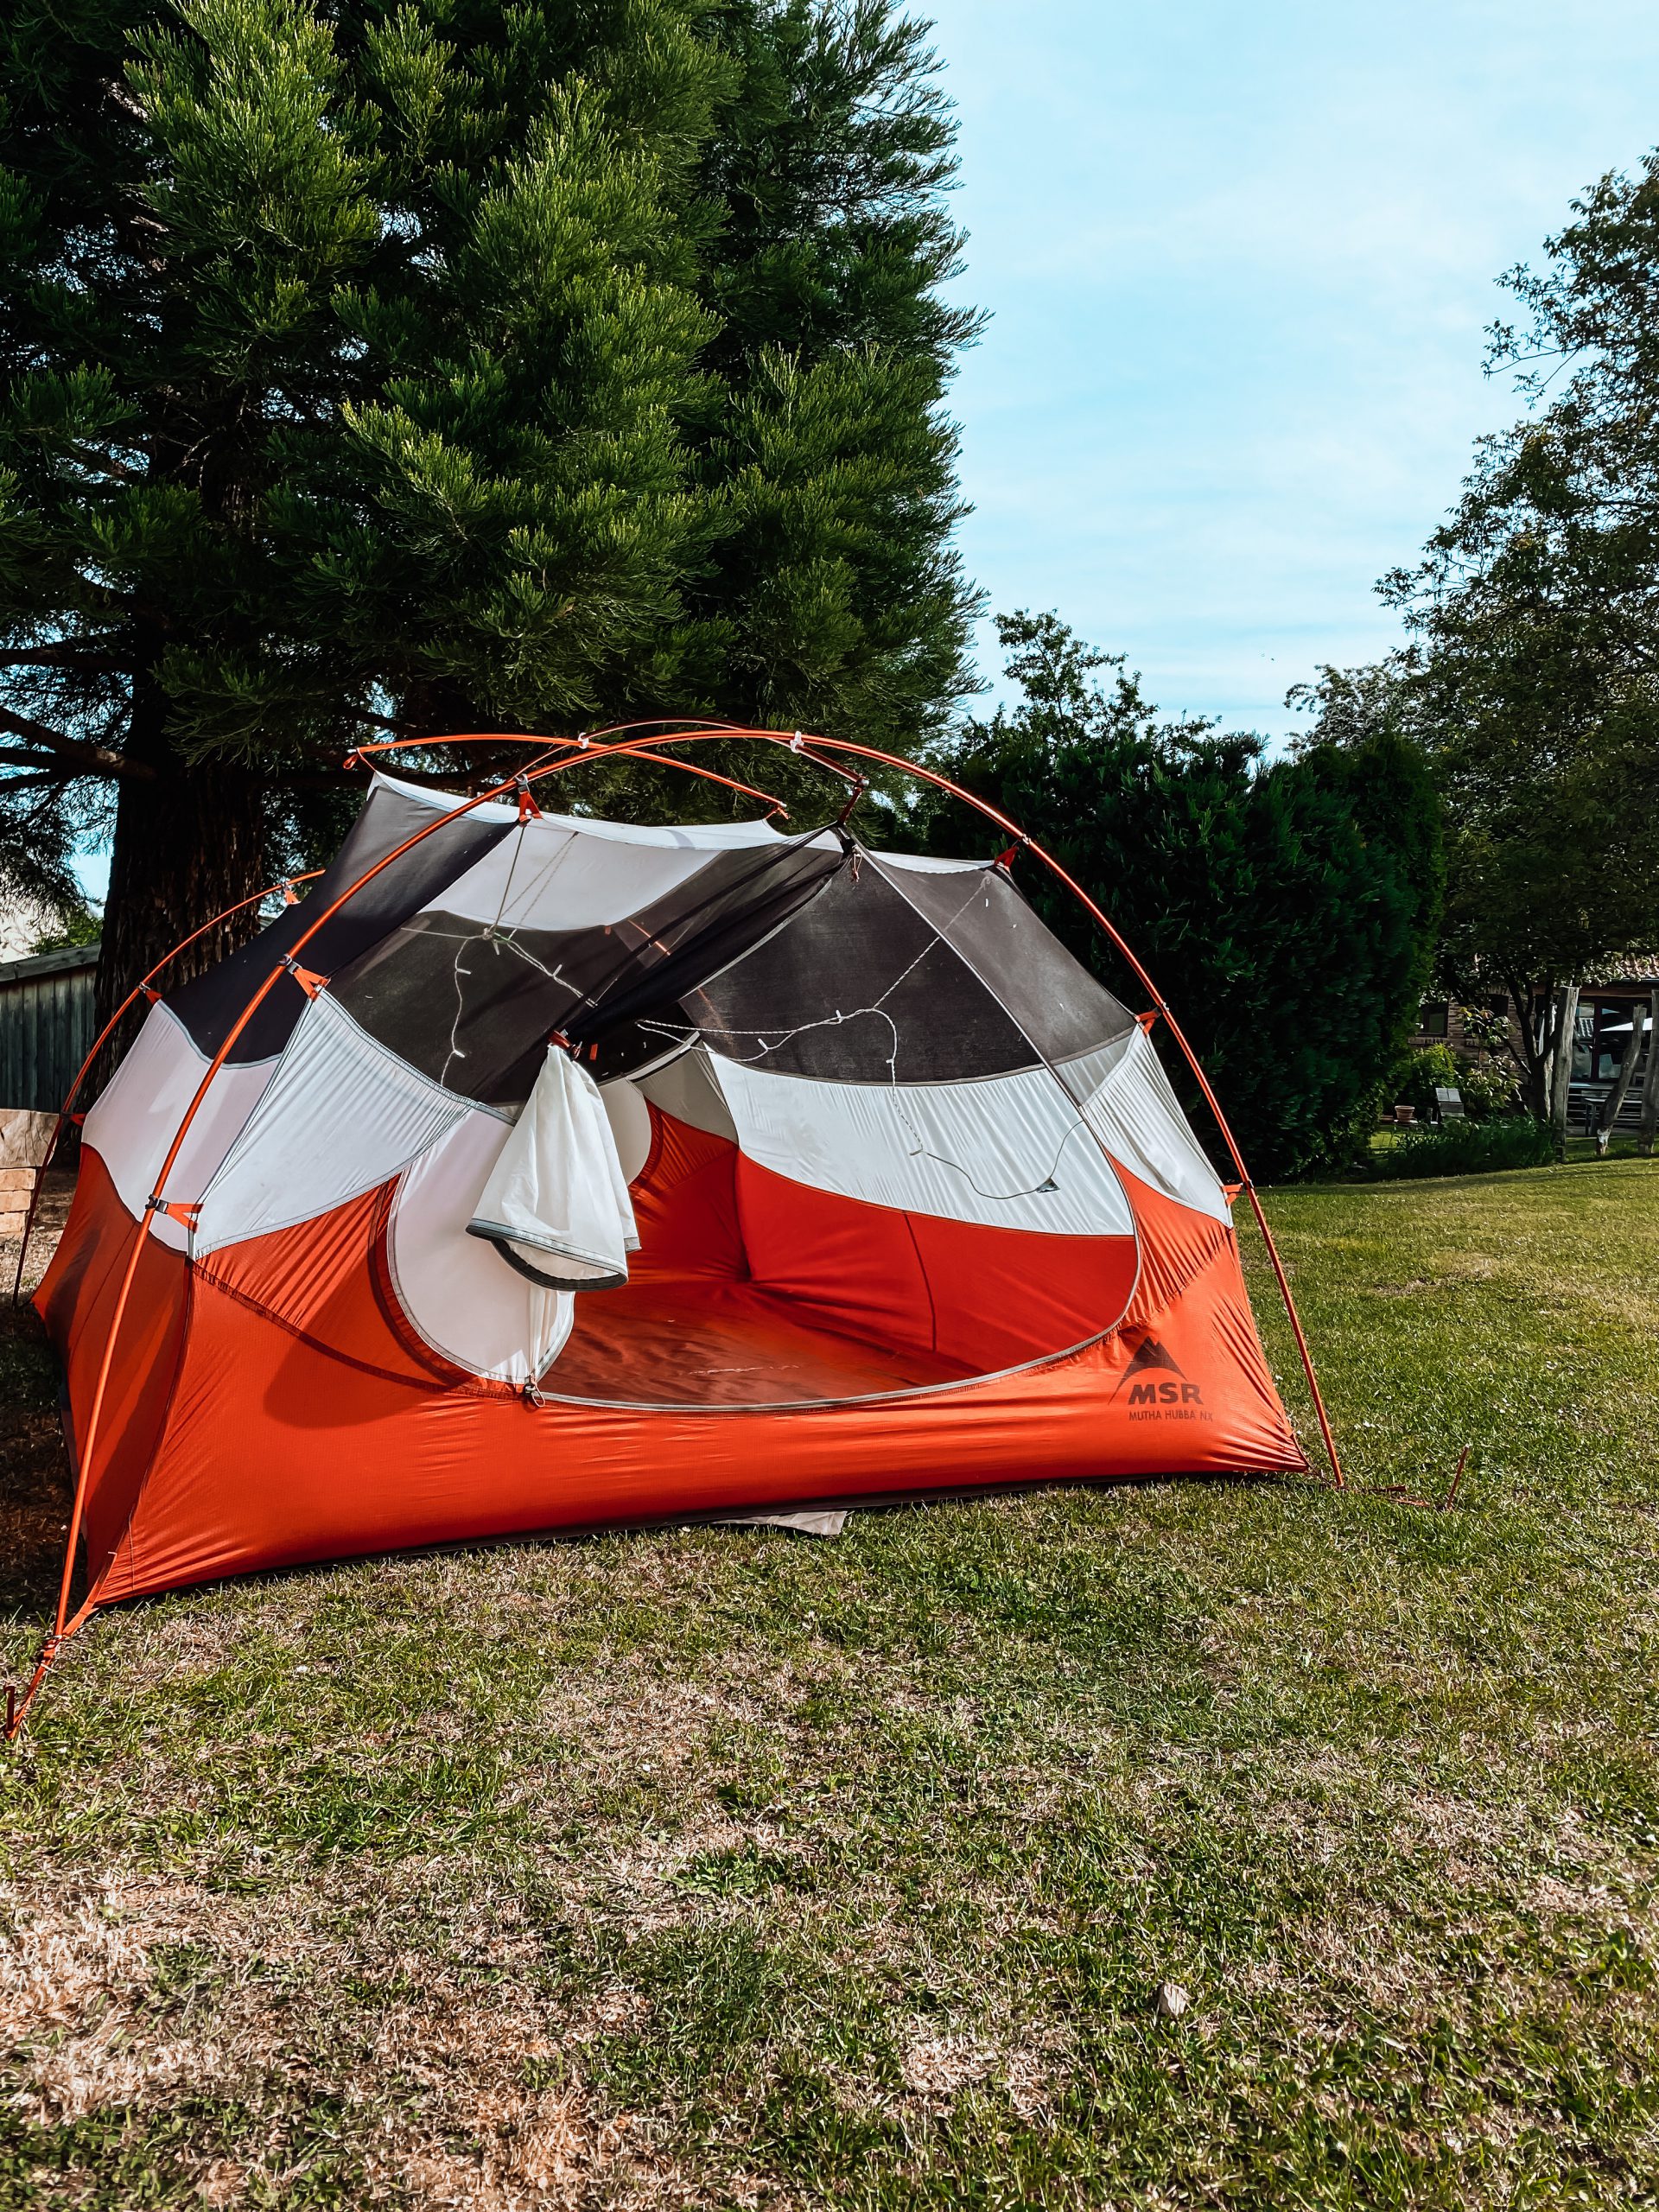 Tenten van MSR_Ik Wil Hiken_Freestanding tent_Outdoor_Hiking_07